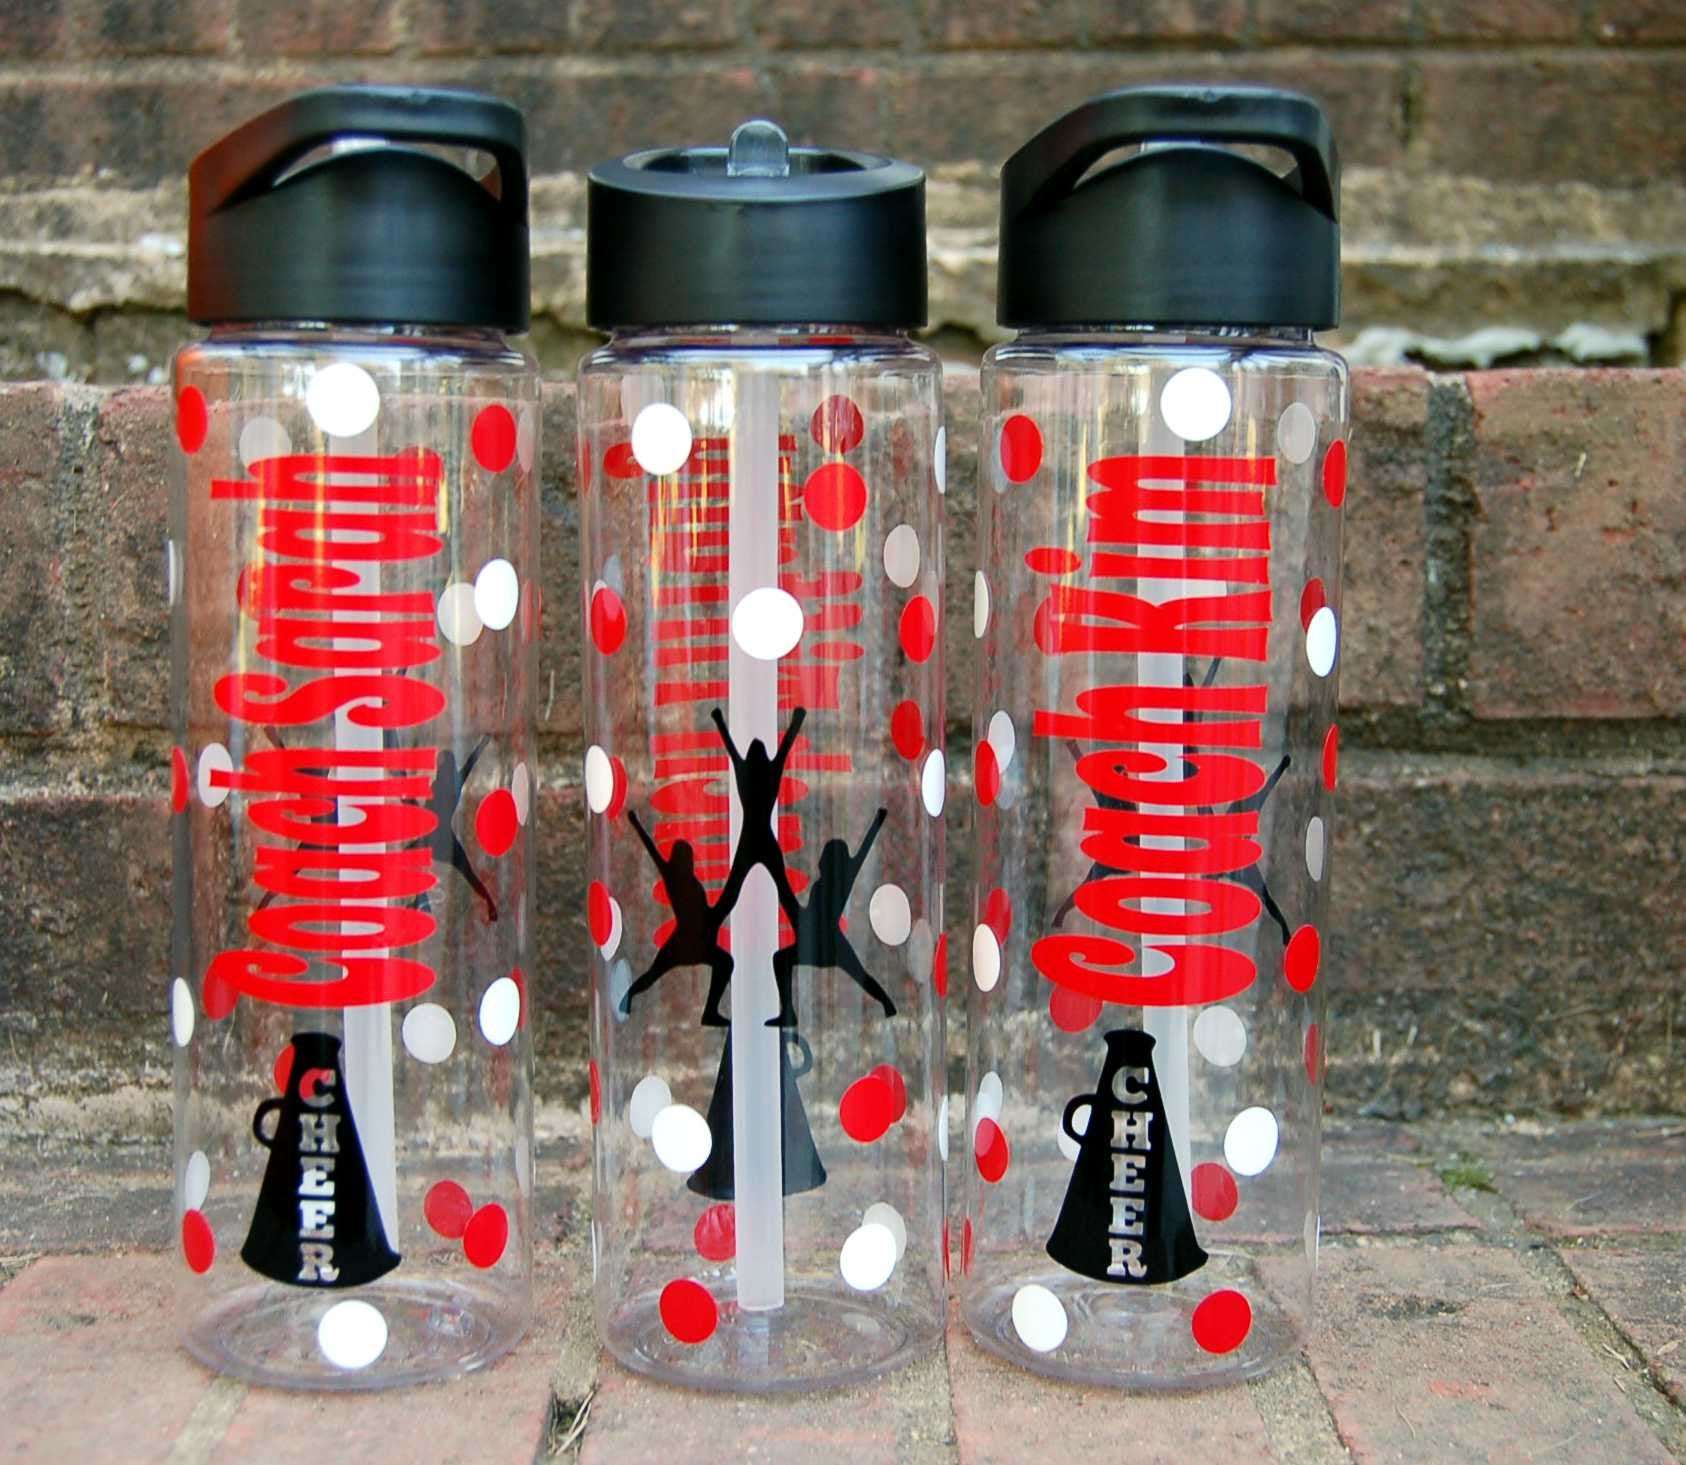 Personalized Water Bottles Water Bottles Water Bottle Team 